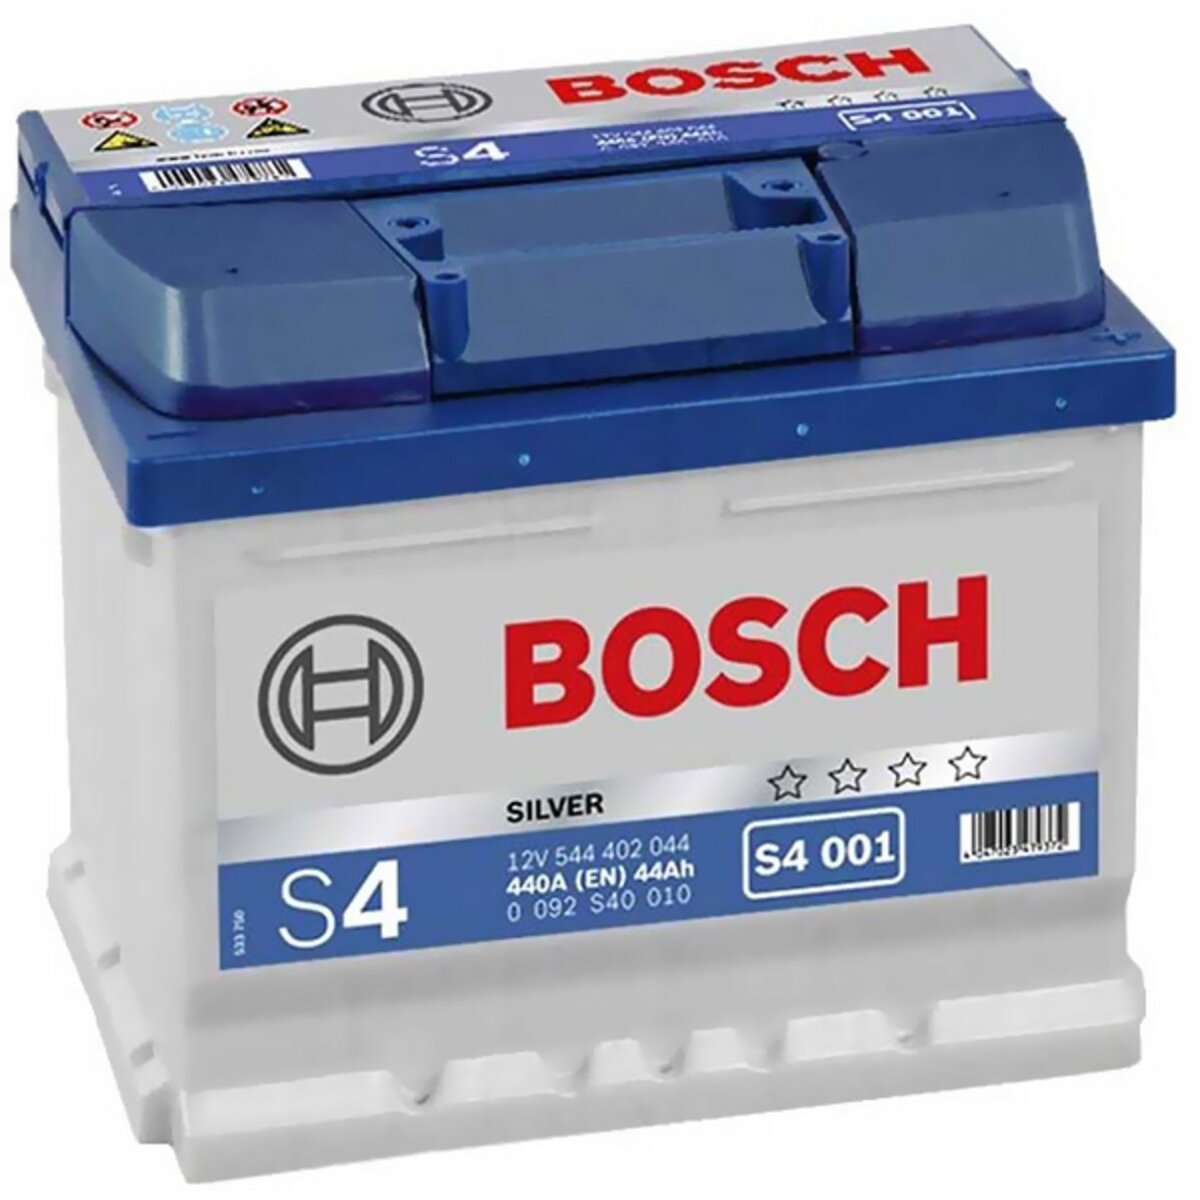 Batterie Bosch 12v au meilleur prix ! [PROMO]